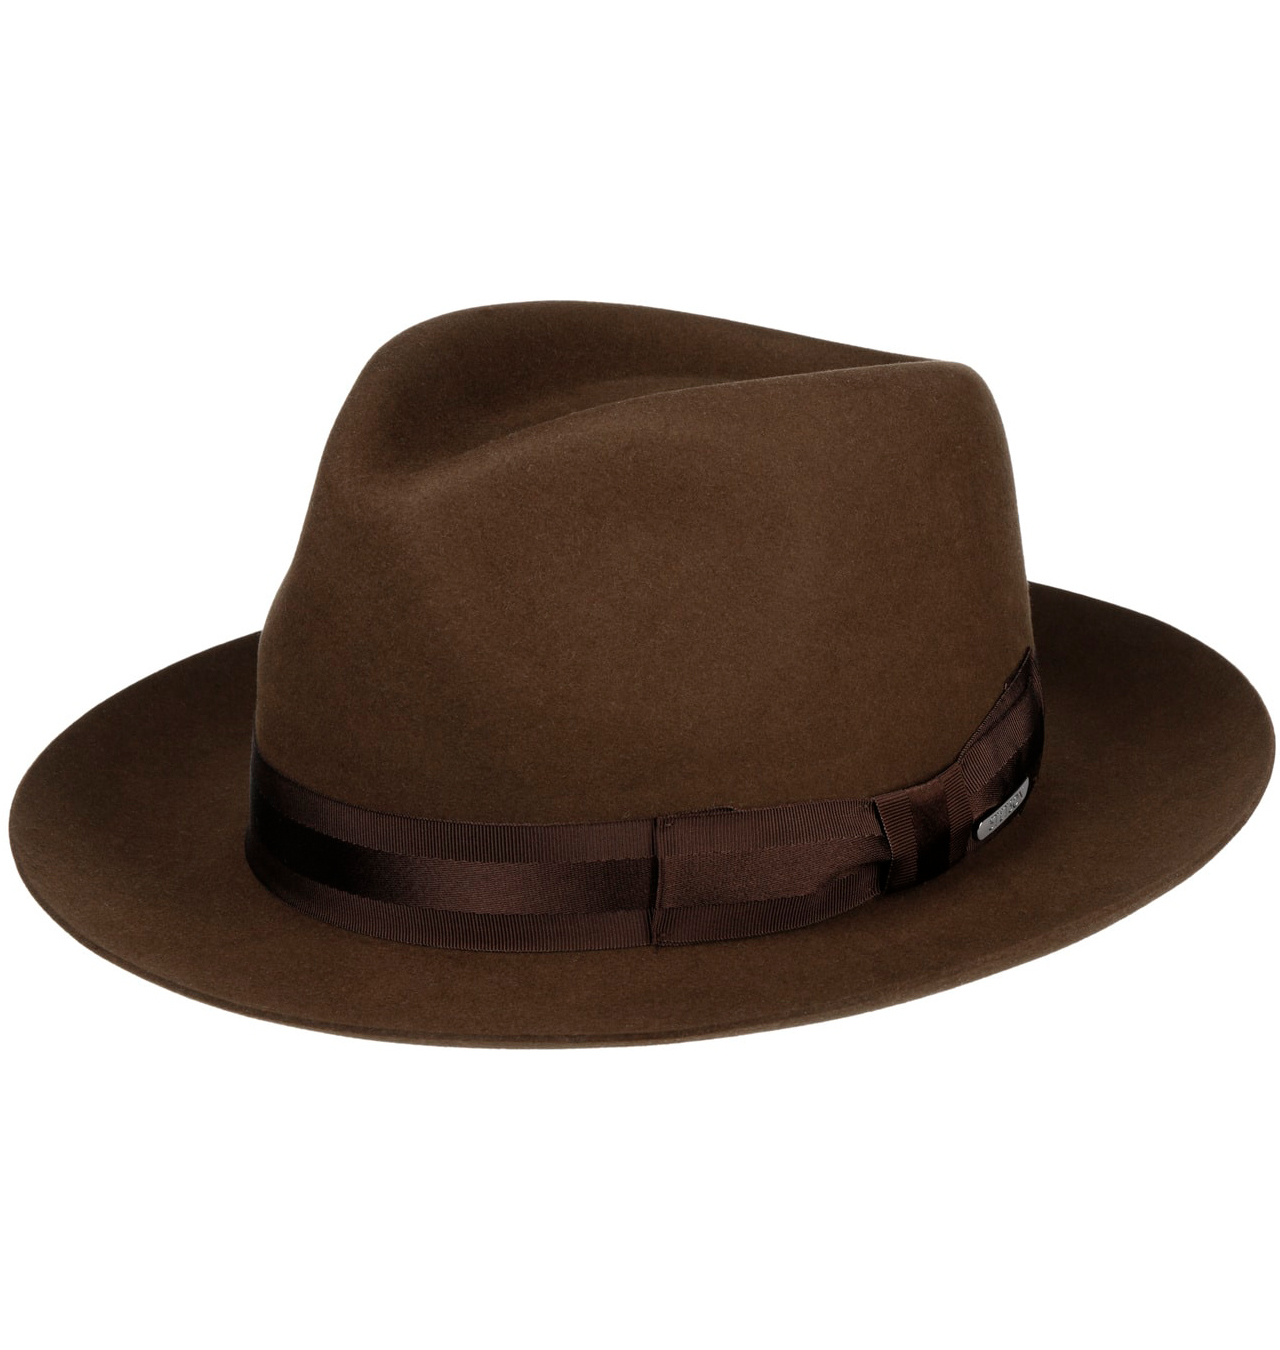 Stetson - Kirkhill Beaver Fedora Fur Felt Hat - Brown